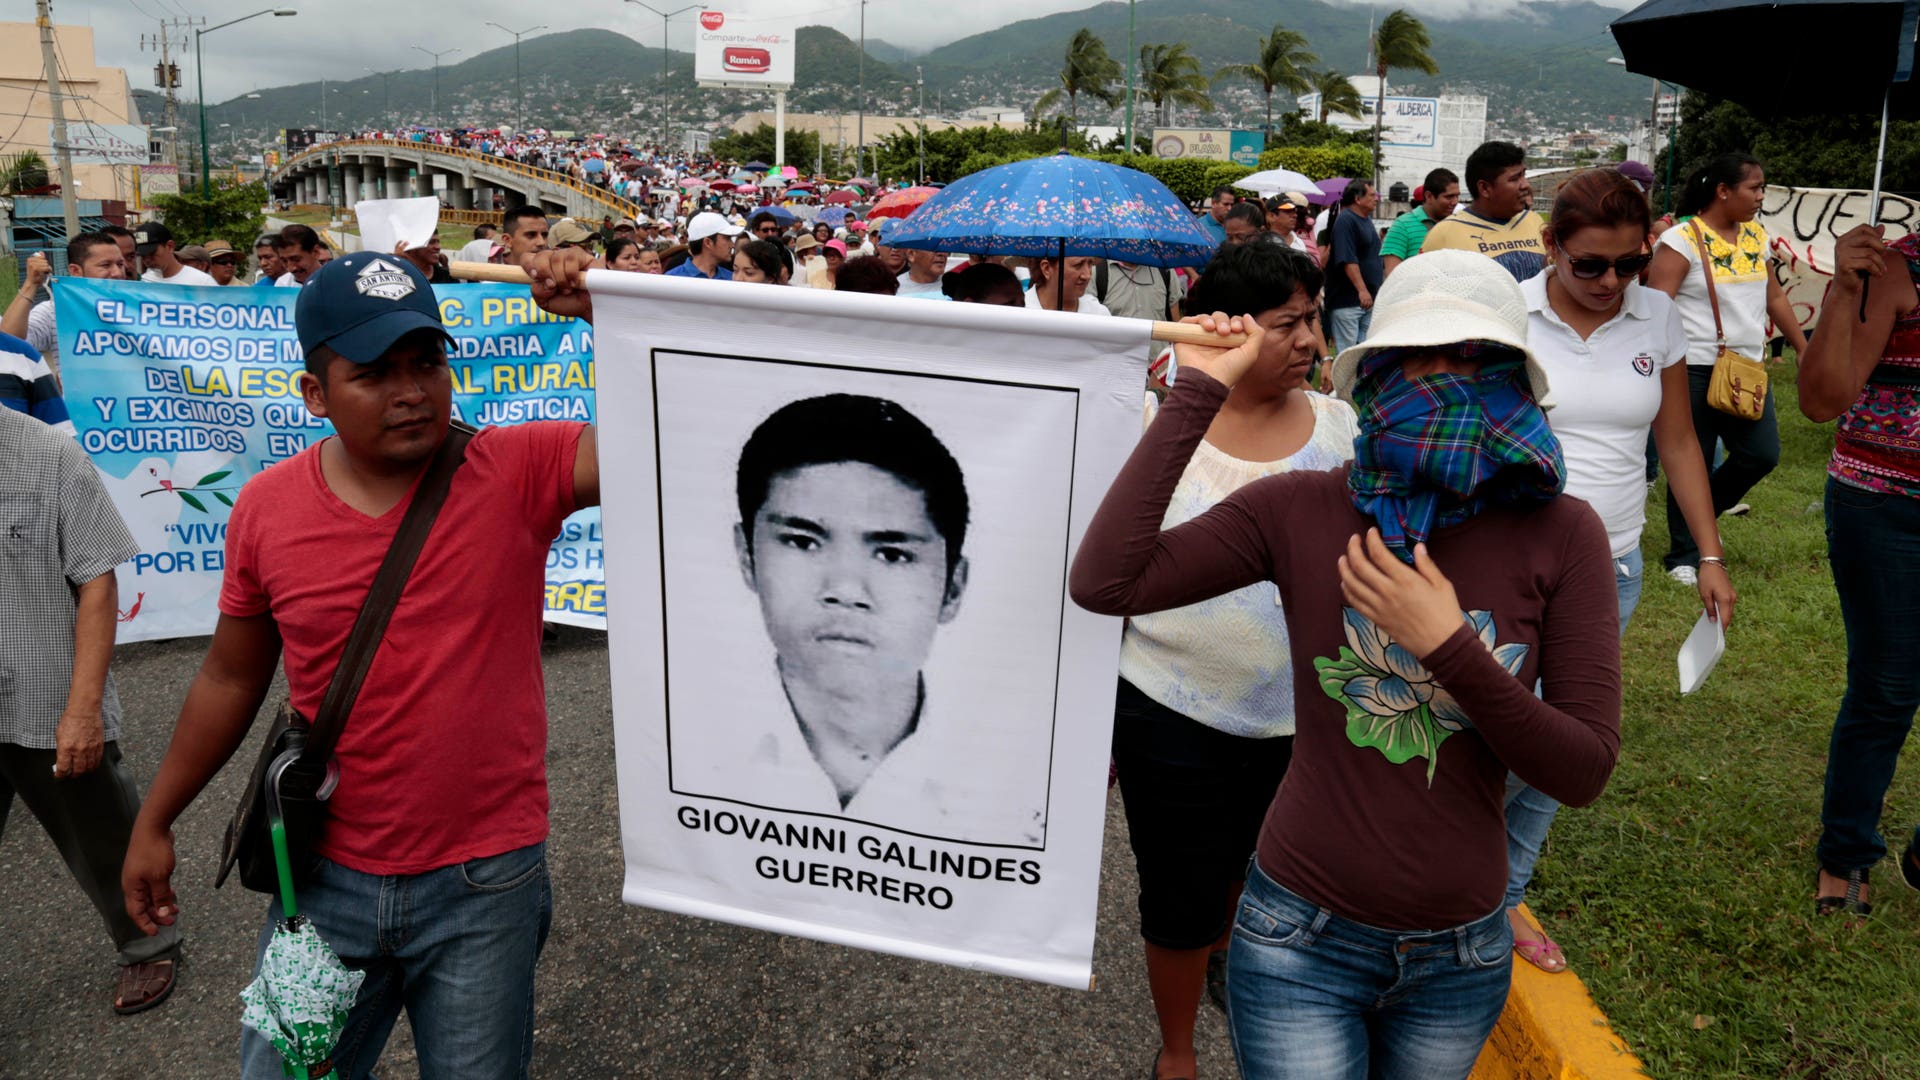 Исчезновение студентов в мексике. Похищение мексиканских студентов 2014. Знаменитый студент из Мексики. Исчезновения 43 мексиканских студентов.